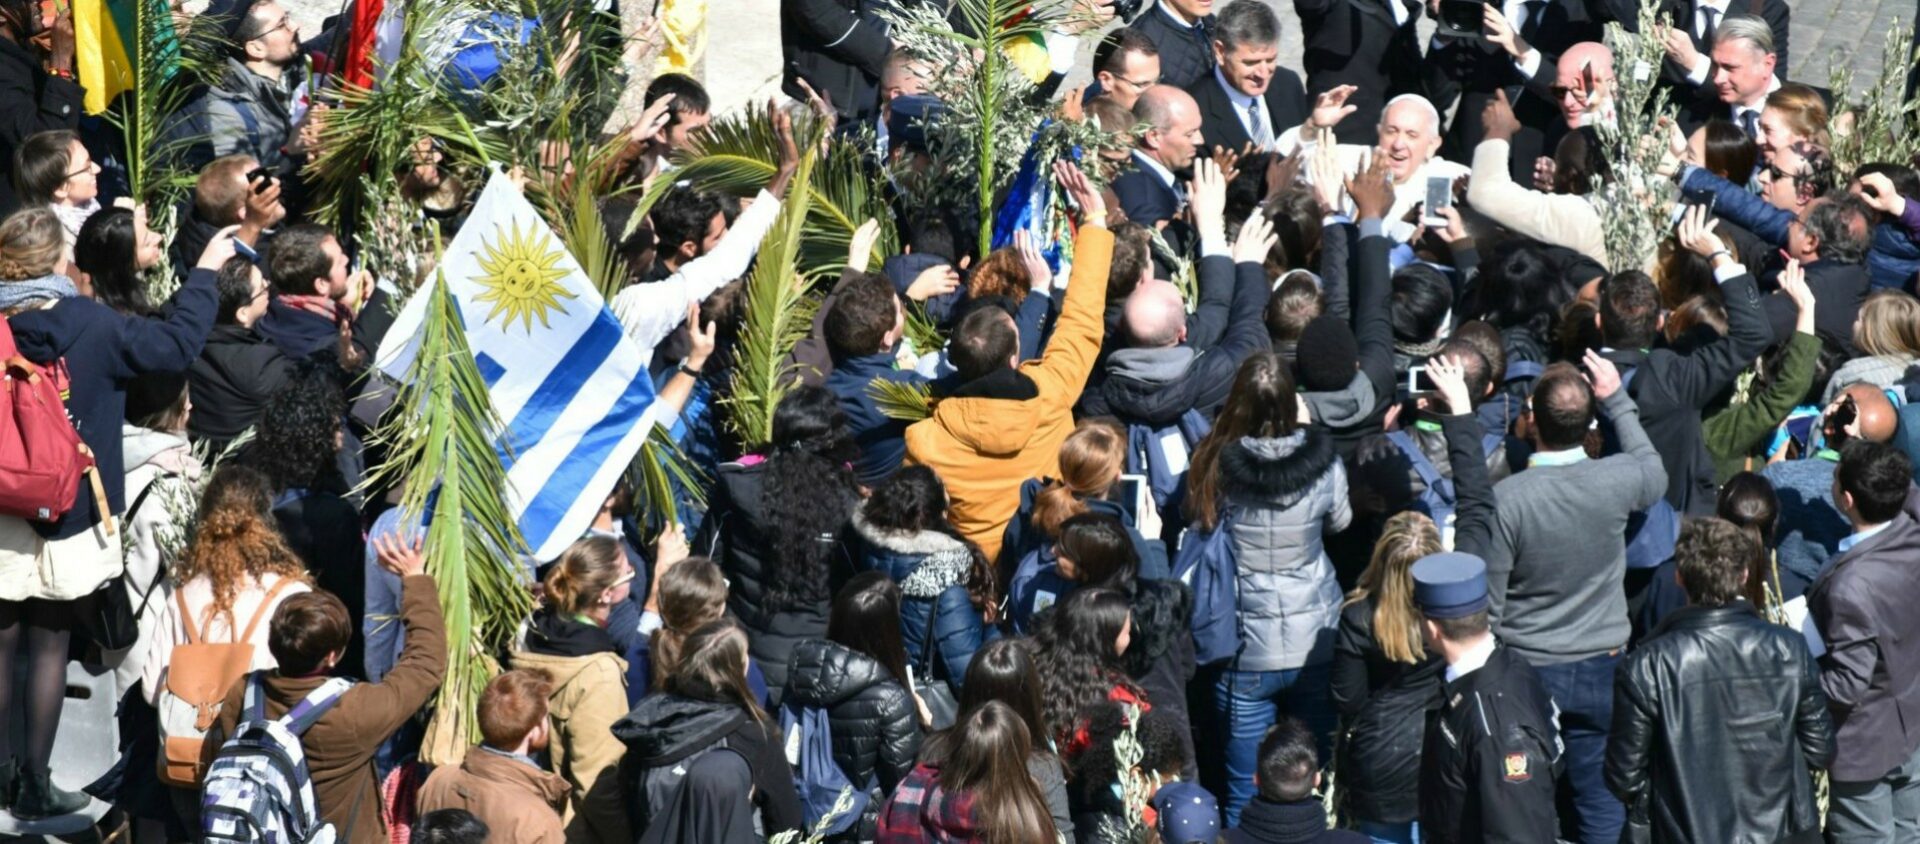 En raison du Covid-19, plus de foules enthousiastes entourant le pape  François, comme le dimanche des Rameaux du 25 mars 2018 | © Jacques Berset 